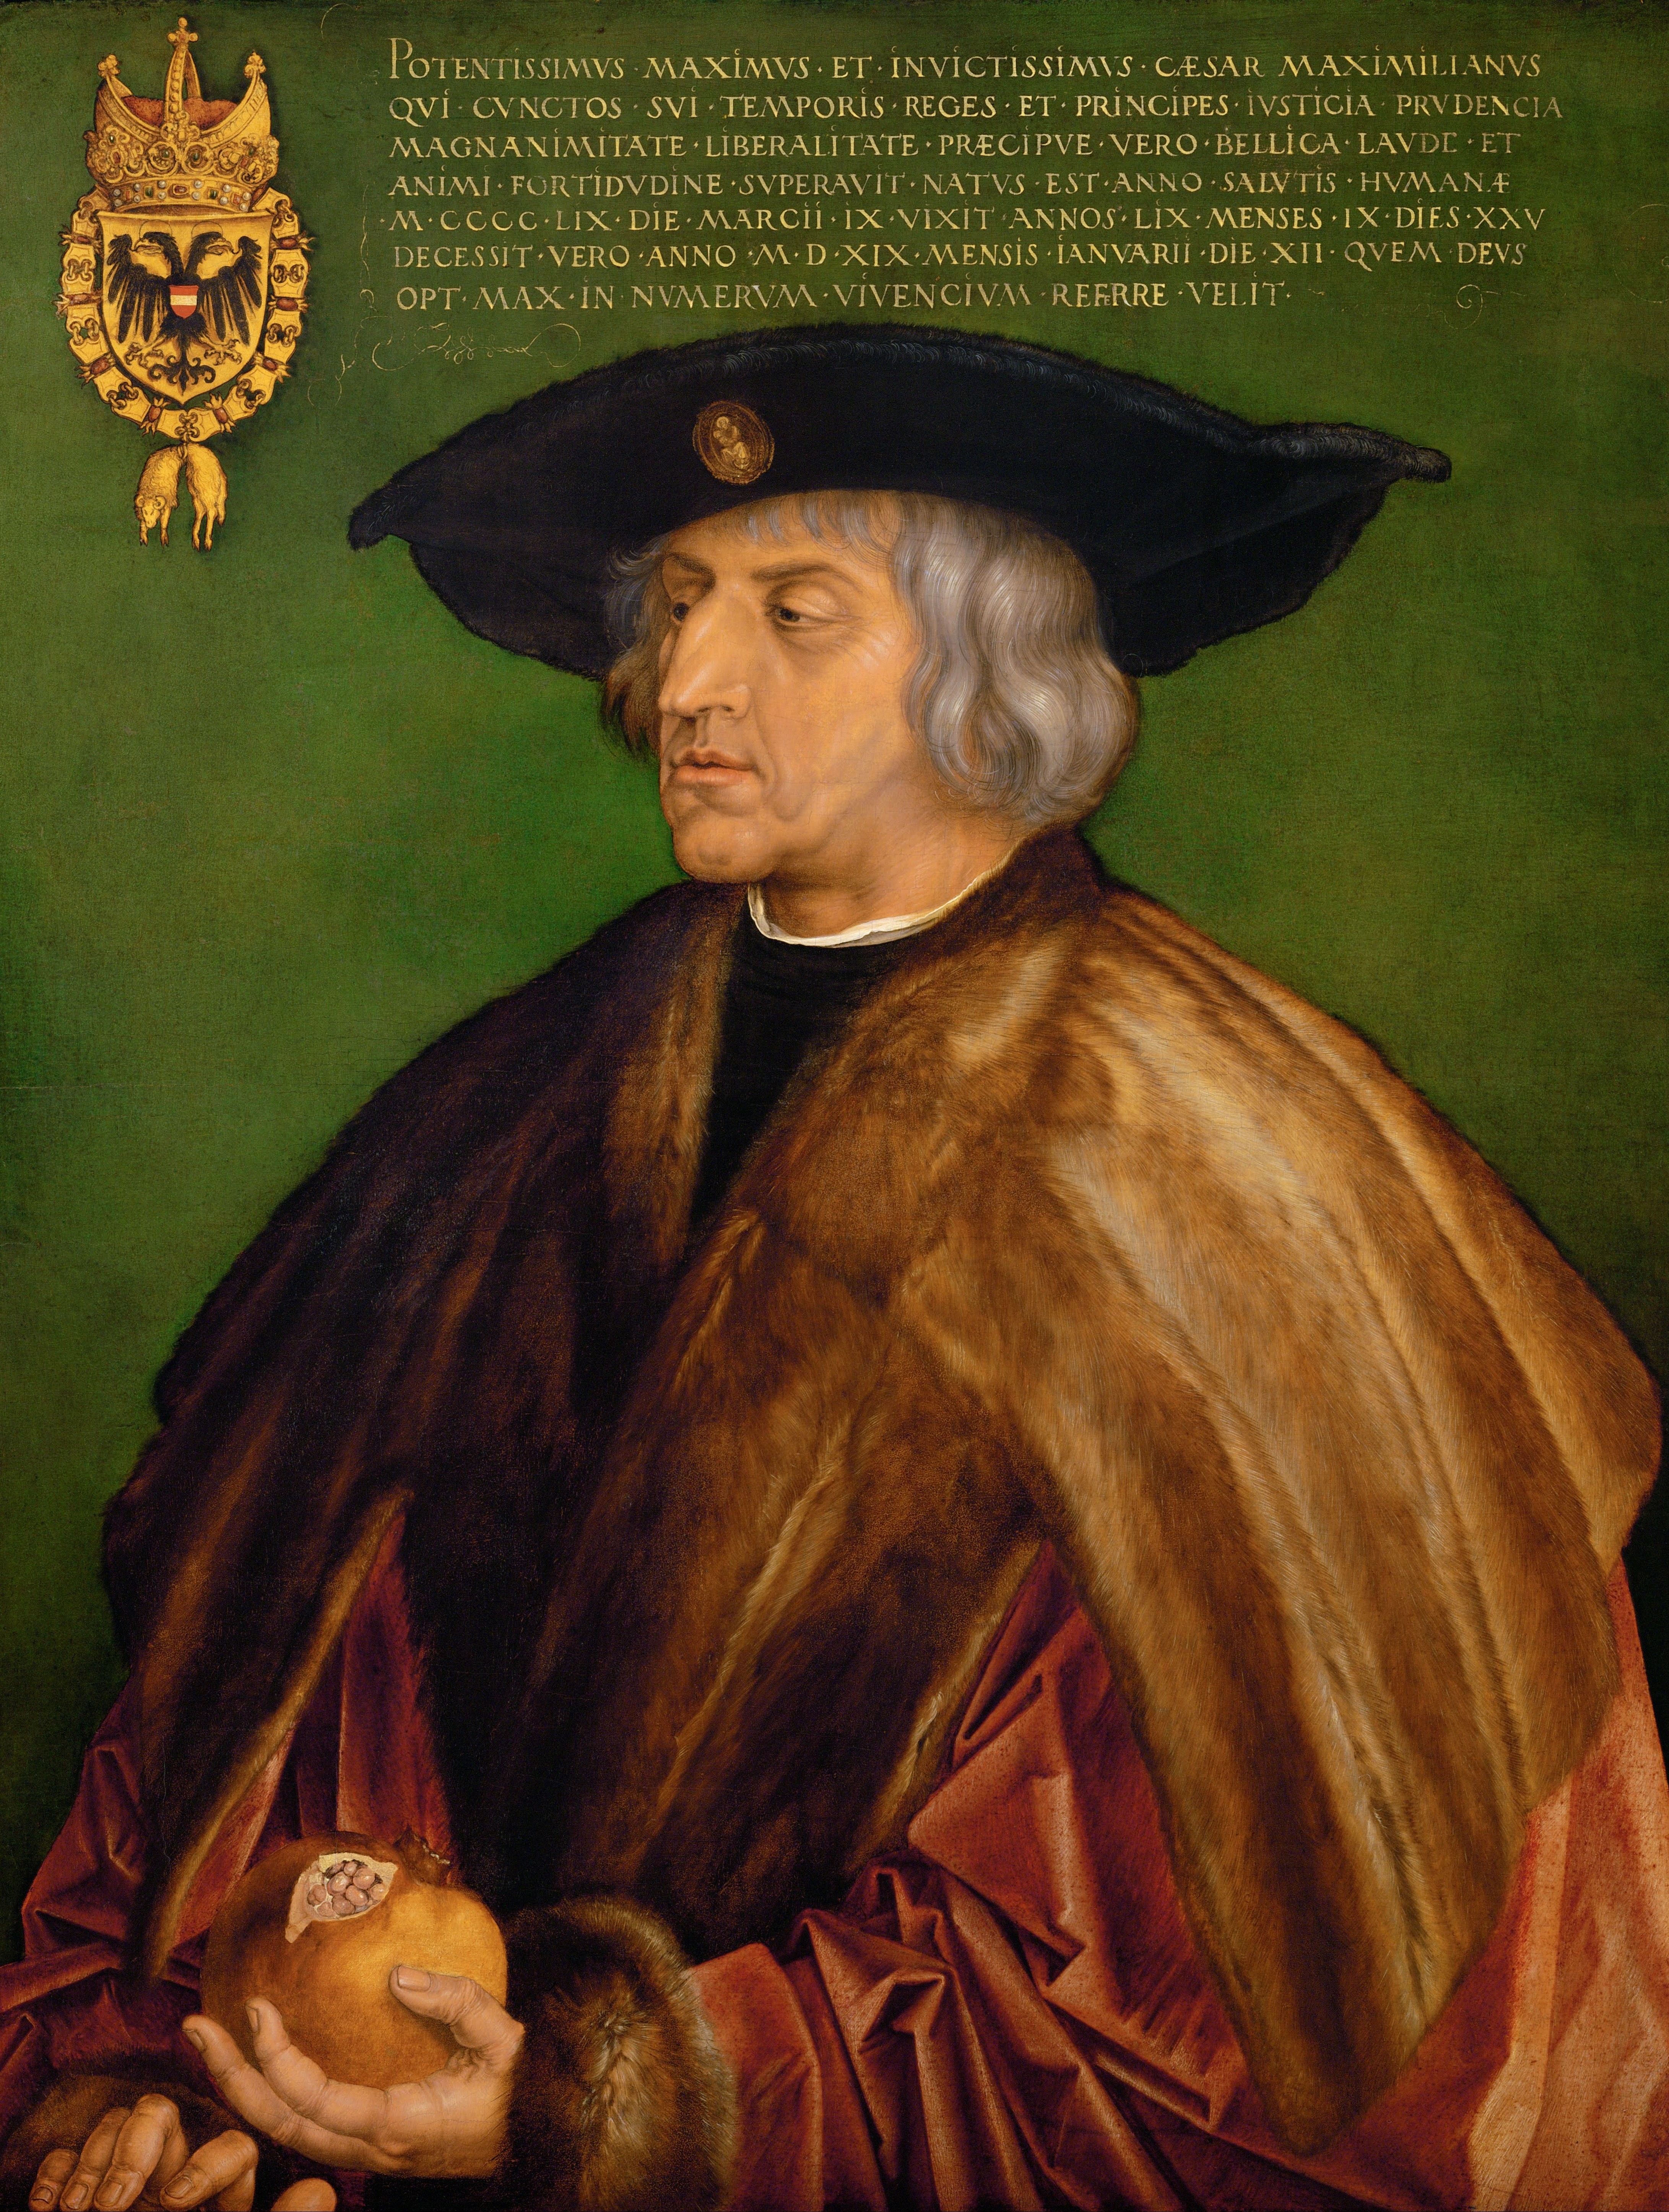 Maximilian I of Habsburg